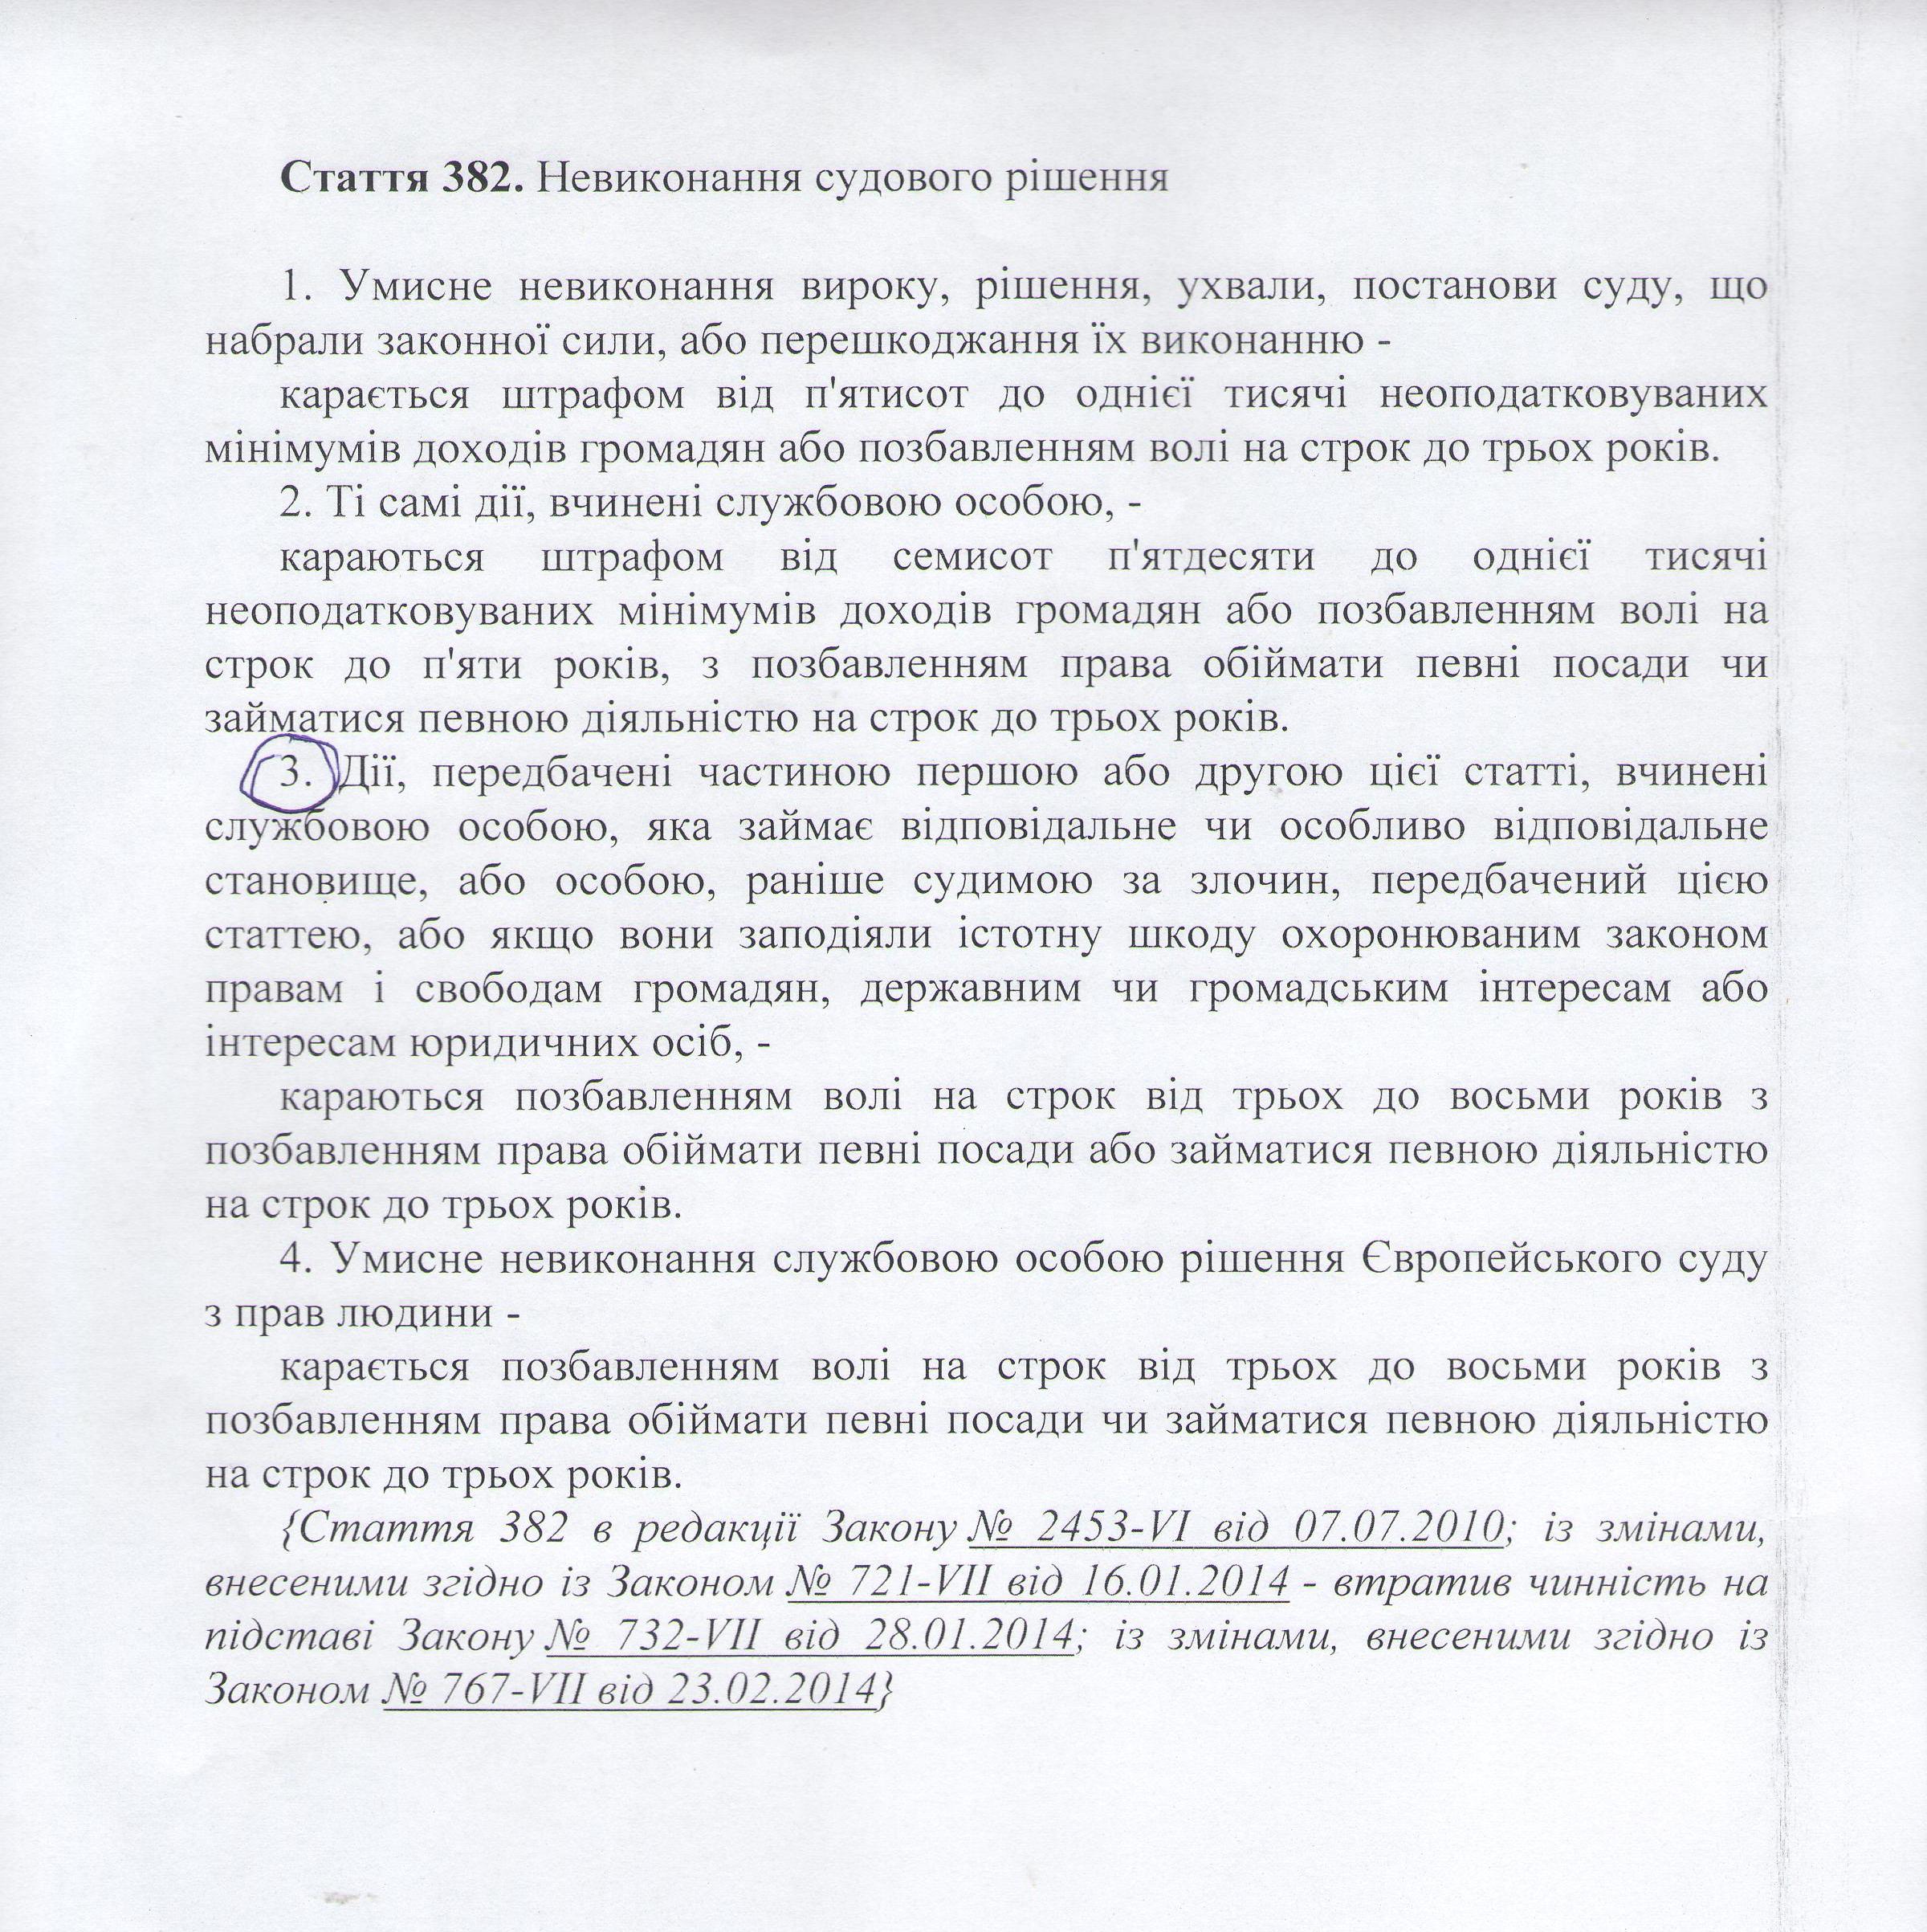 Закарпатську ОДА оштрафовано за невиконання рішення суду щодо поновлення на посаді чиновника (ДОКУМЕНТИ)